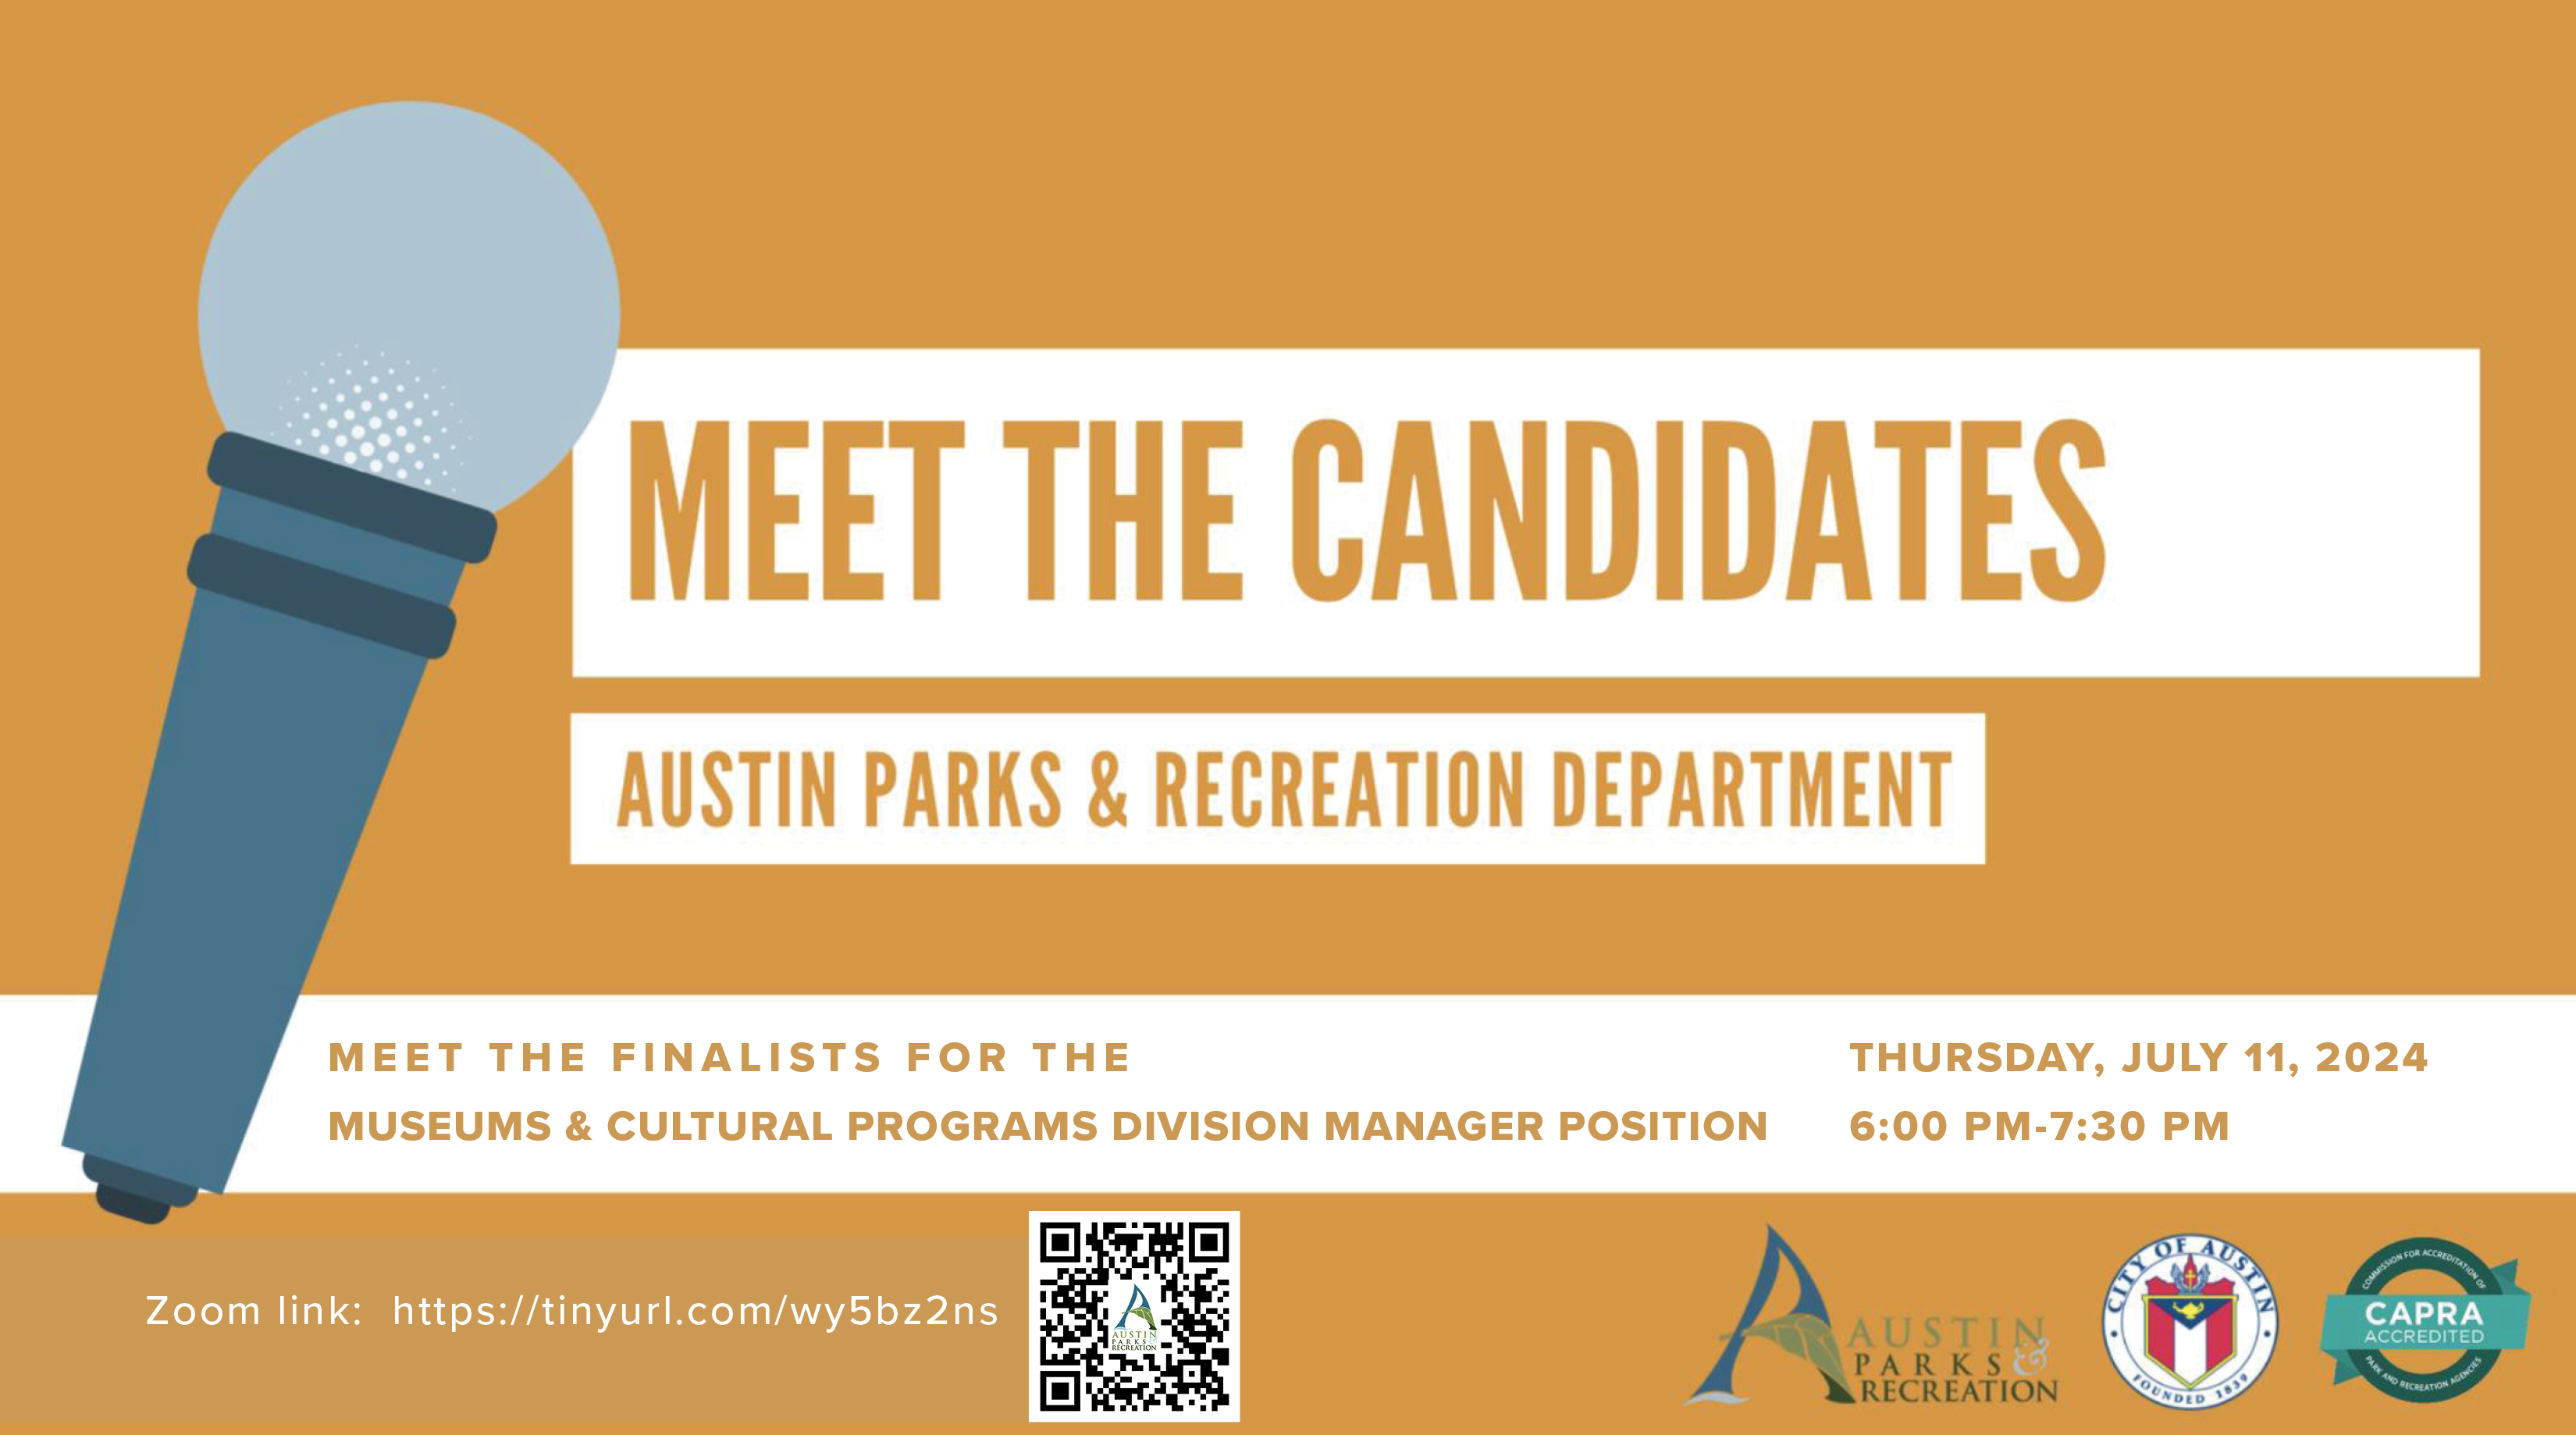 Conozca a los finalistas para el puesto de Gerente de la División de Museos y Programas Culturales en el Departamento de Parques y Recreación de Austin